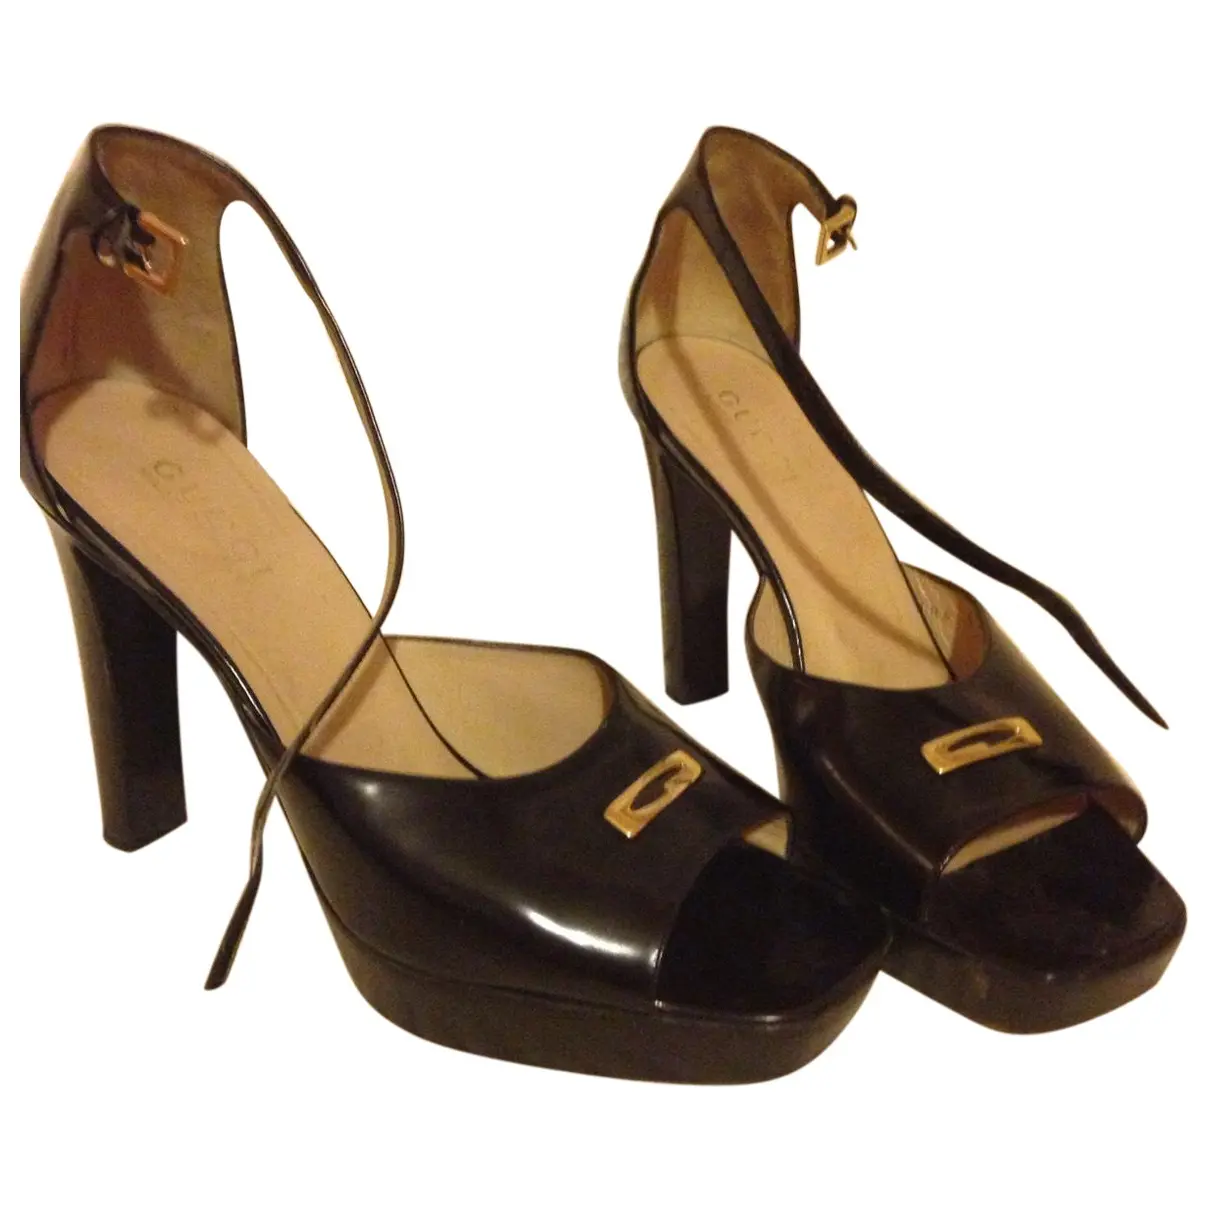 Absolute black heels Gucci - Vintage